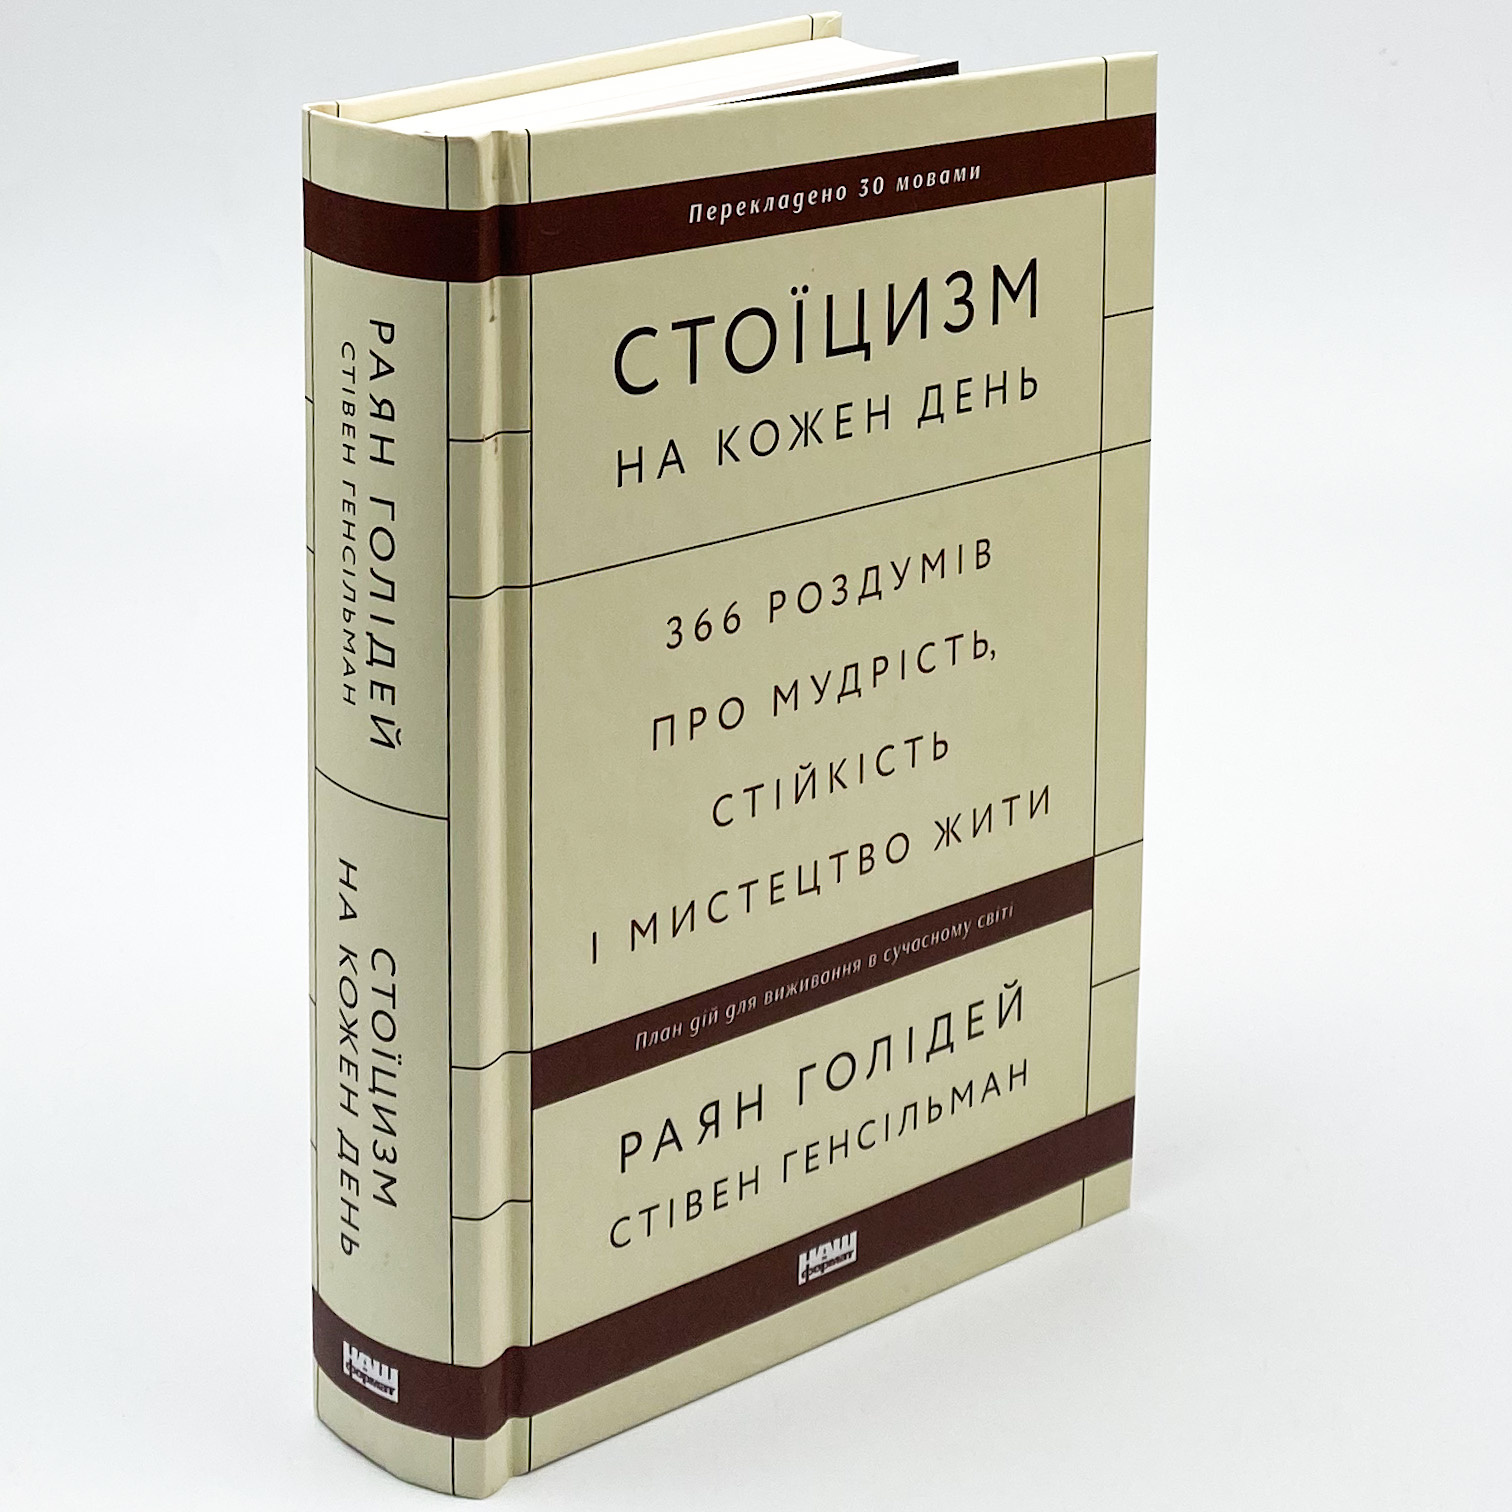 Стоїцизм на кожен день. 366 роздумів про мудрість, стійкість і мистецтво жити. Автор — Райан Холидей, Стивен Хансельман. 